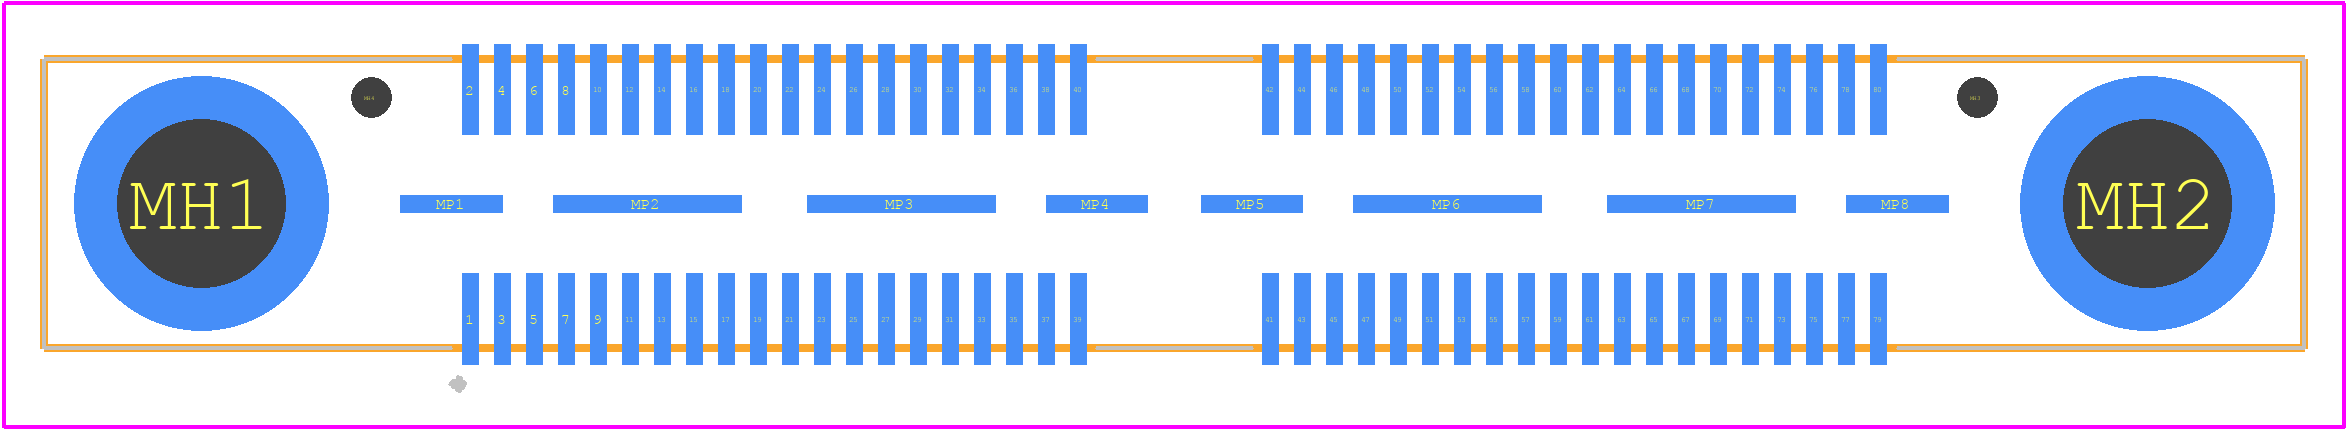 QSE-040-01-L-D-A-RT1 - SAMTEC PCB footprint - Other - Other - QSE-040-01-L-D-A-RT1-1